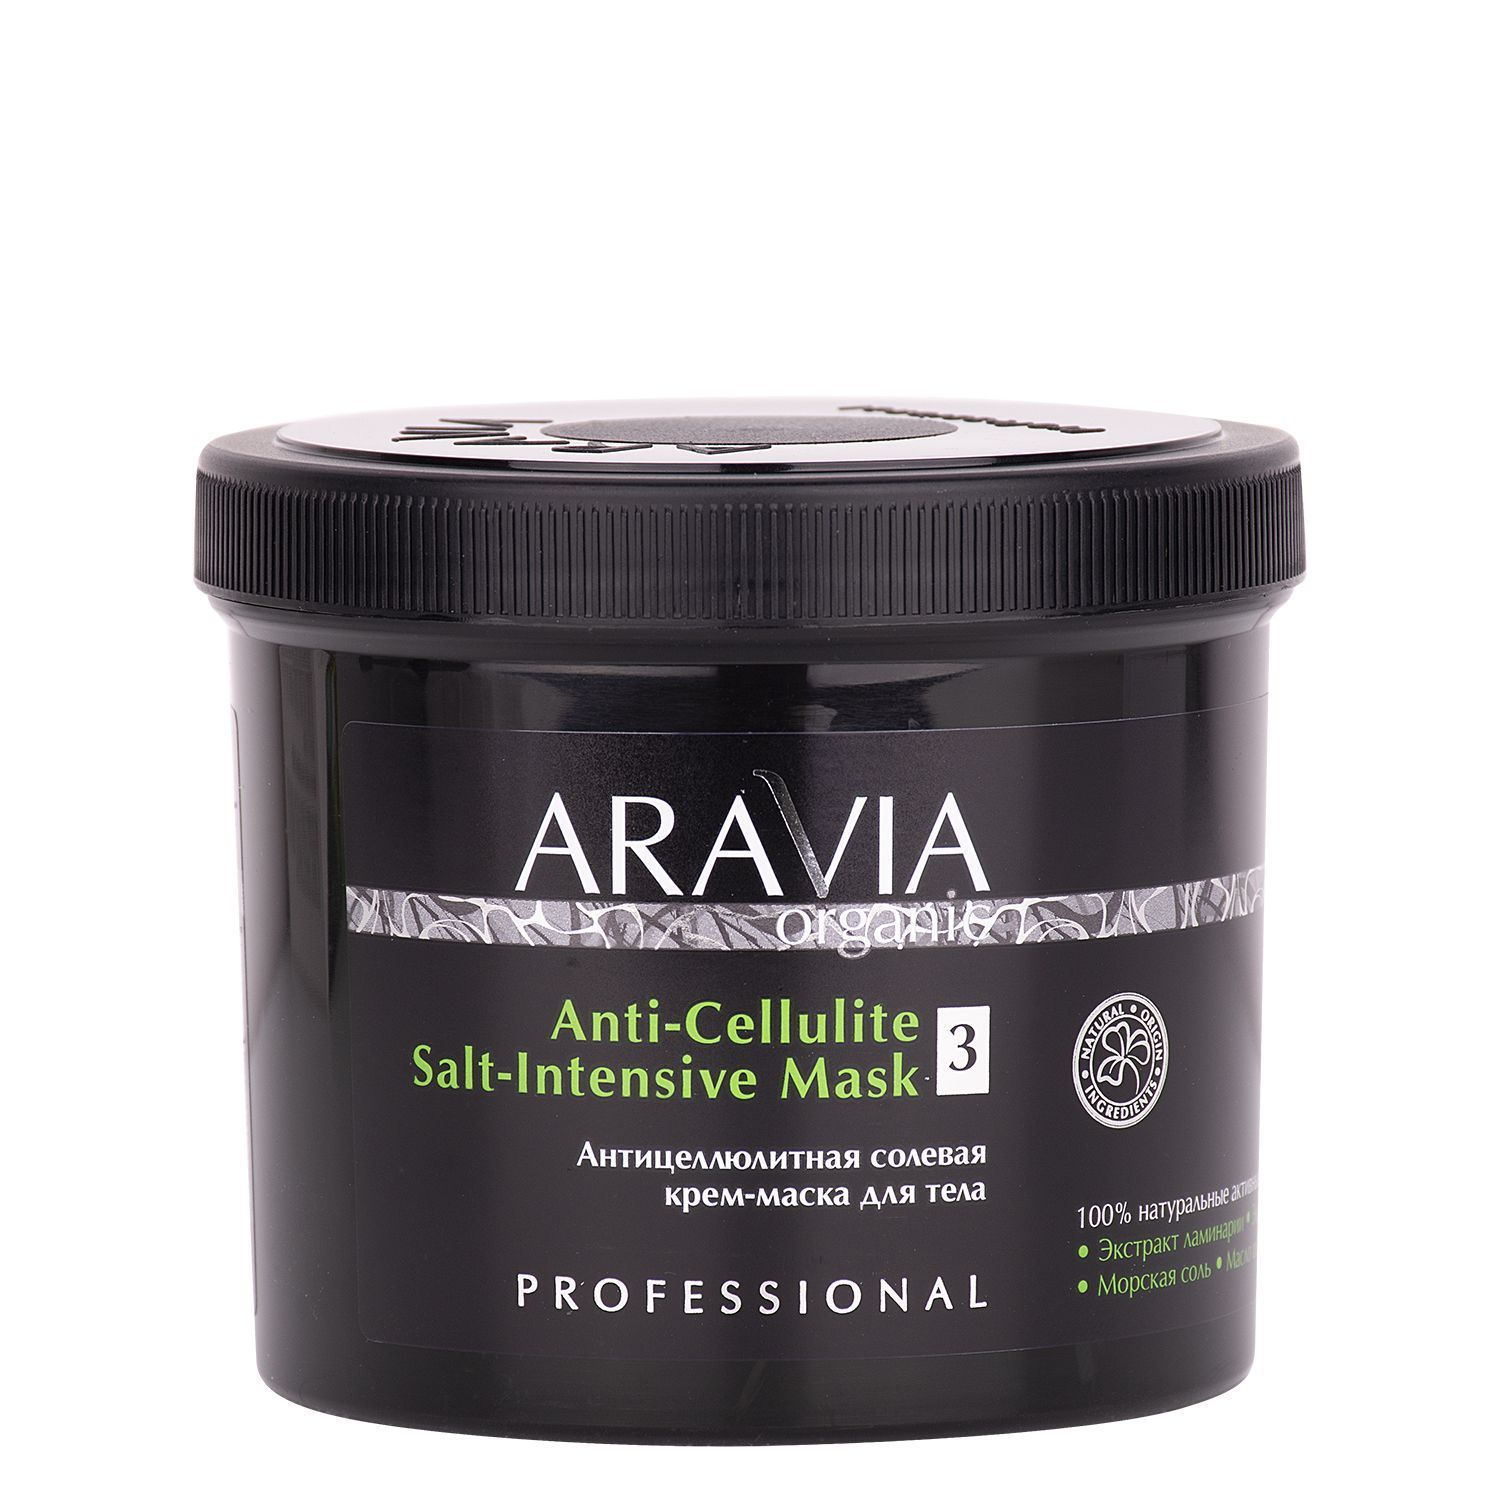 Купить Антицеллюлитная солевая крем-маска для тела Anti-Cellulite Salt-Intensive Mask, 550 мл, Aravia Organic